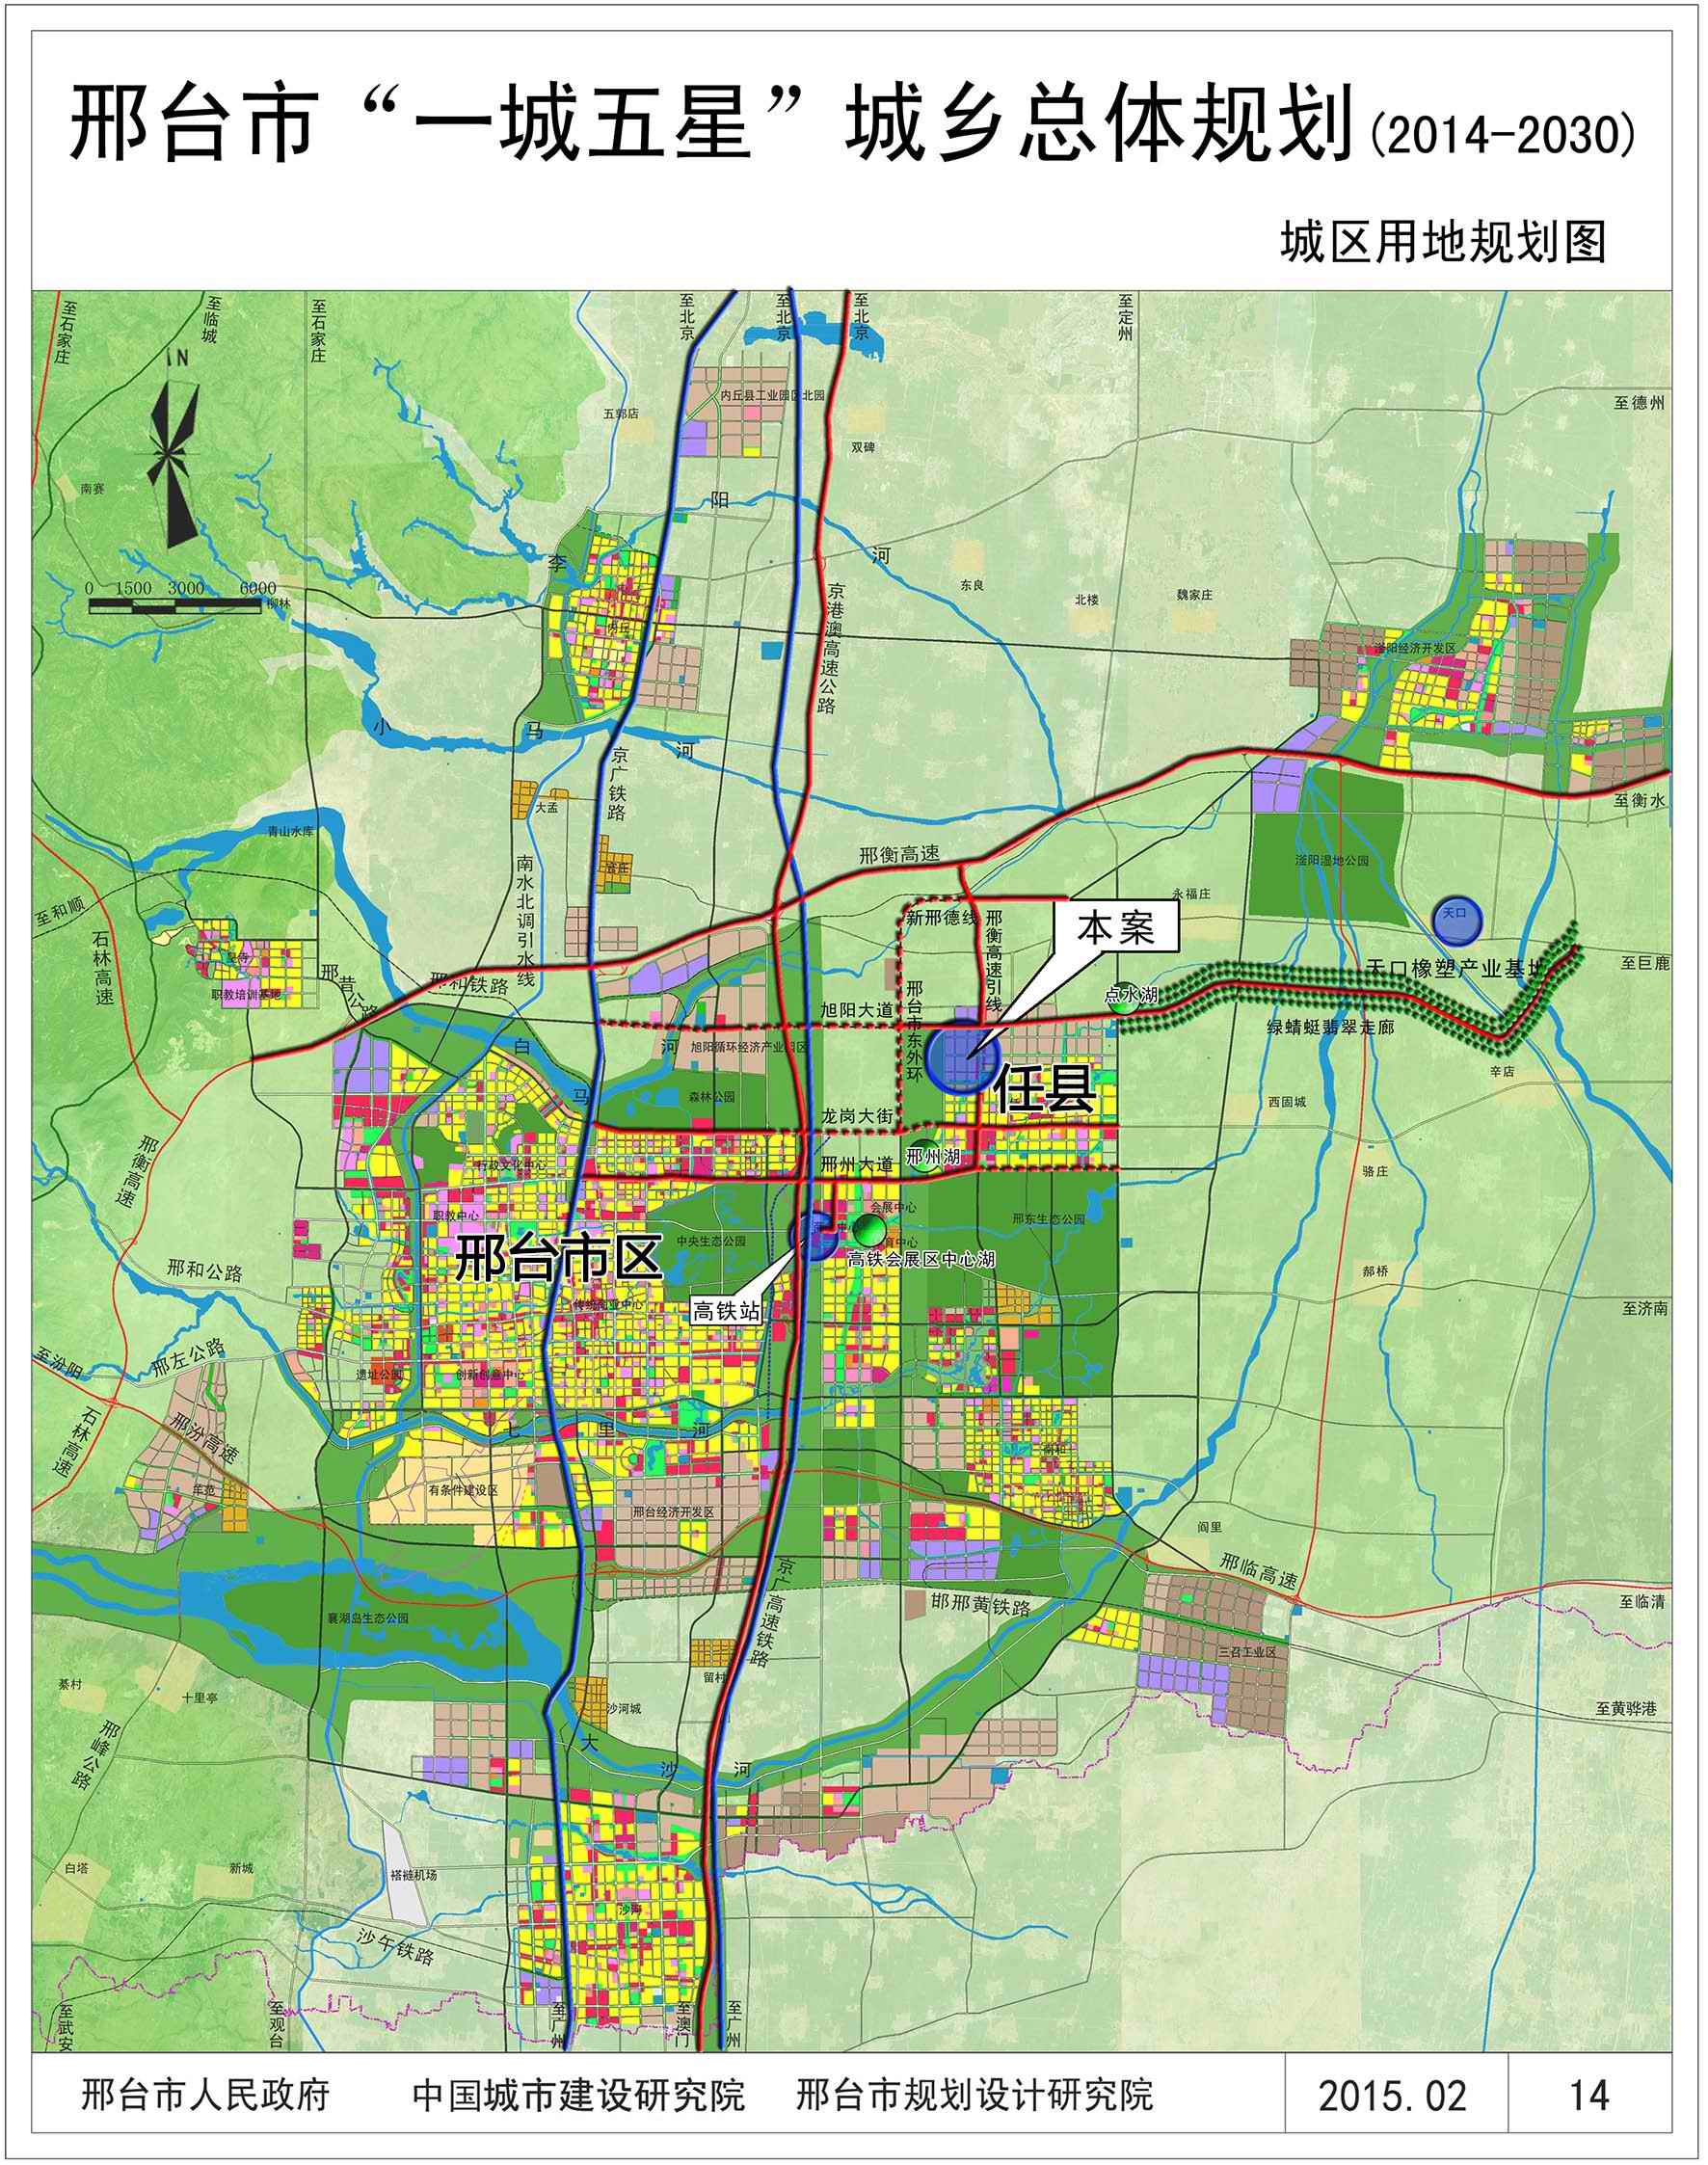 邢台市围绕发展战略要求做出规划调整,将任县定位为邢台市及"一城五星